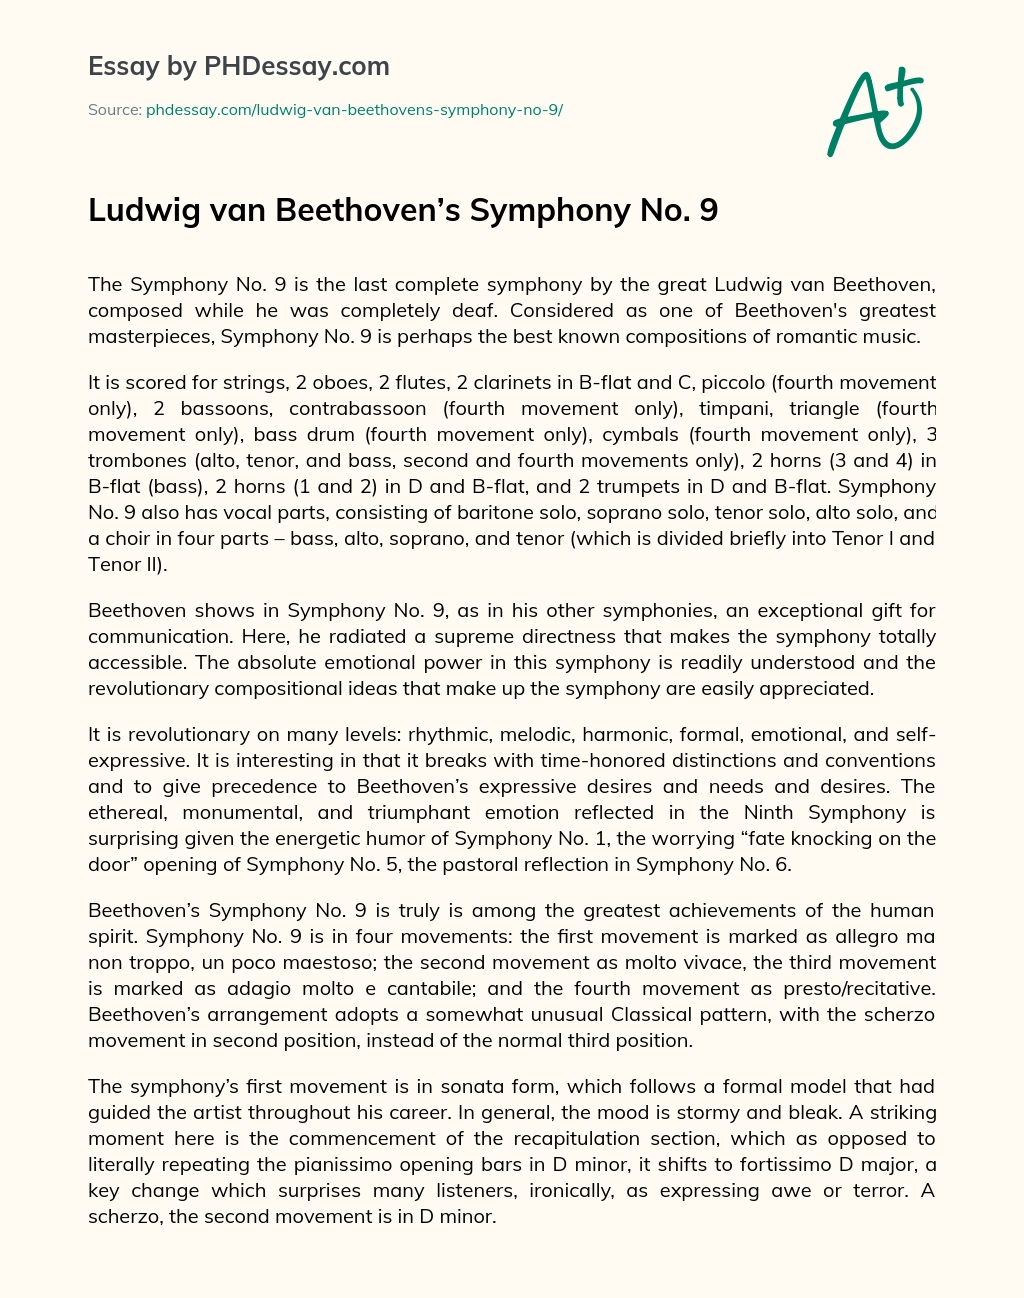 Ludwig van Beethoven’s Symphony No. 9 essay